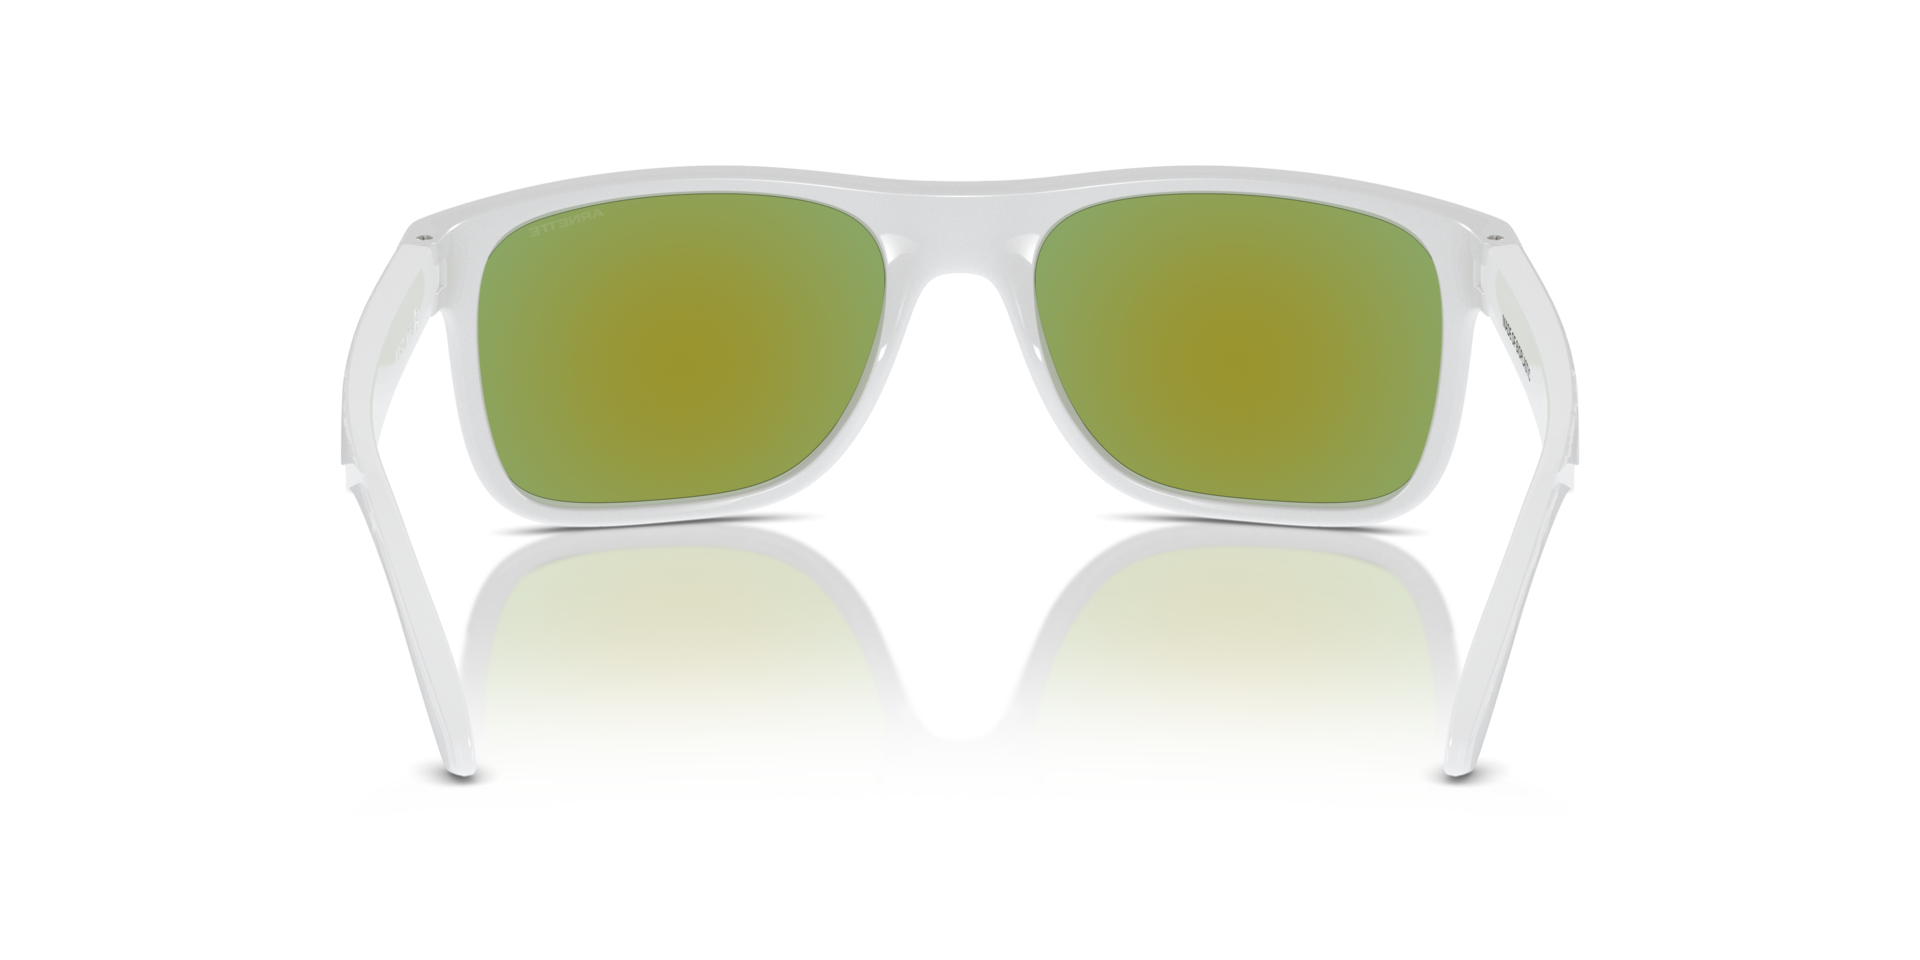 Das Bild zeigt die Sonnenbrille AN4341 27794V von der Marke Arnette in weiß.